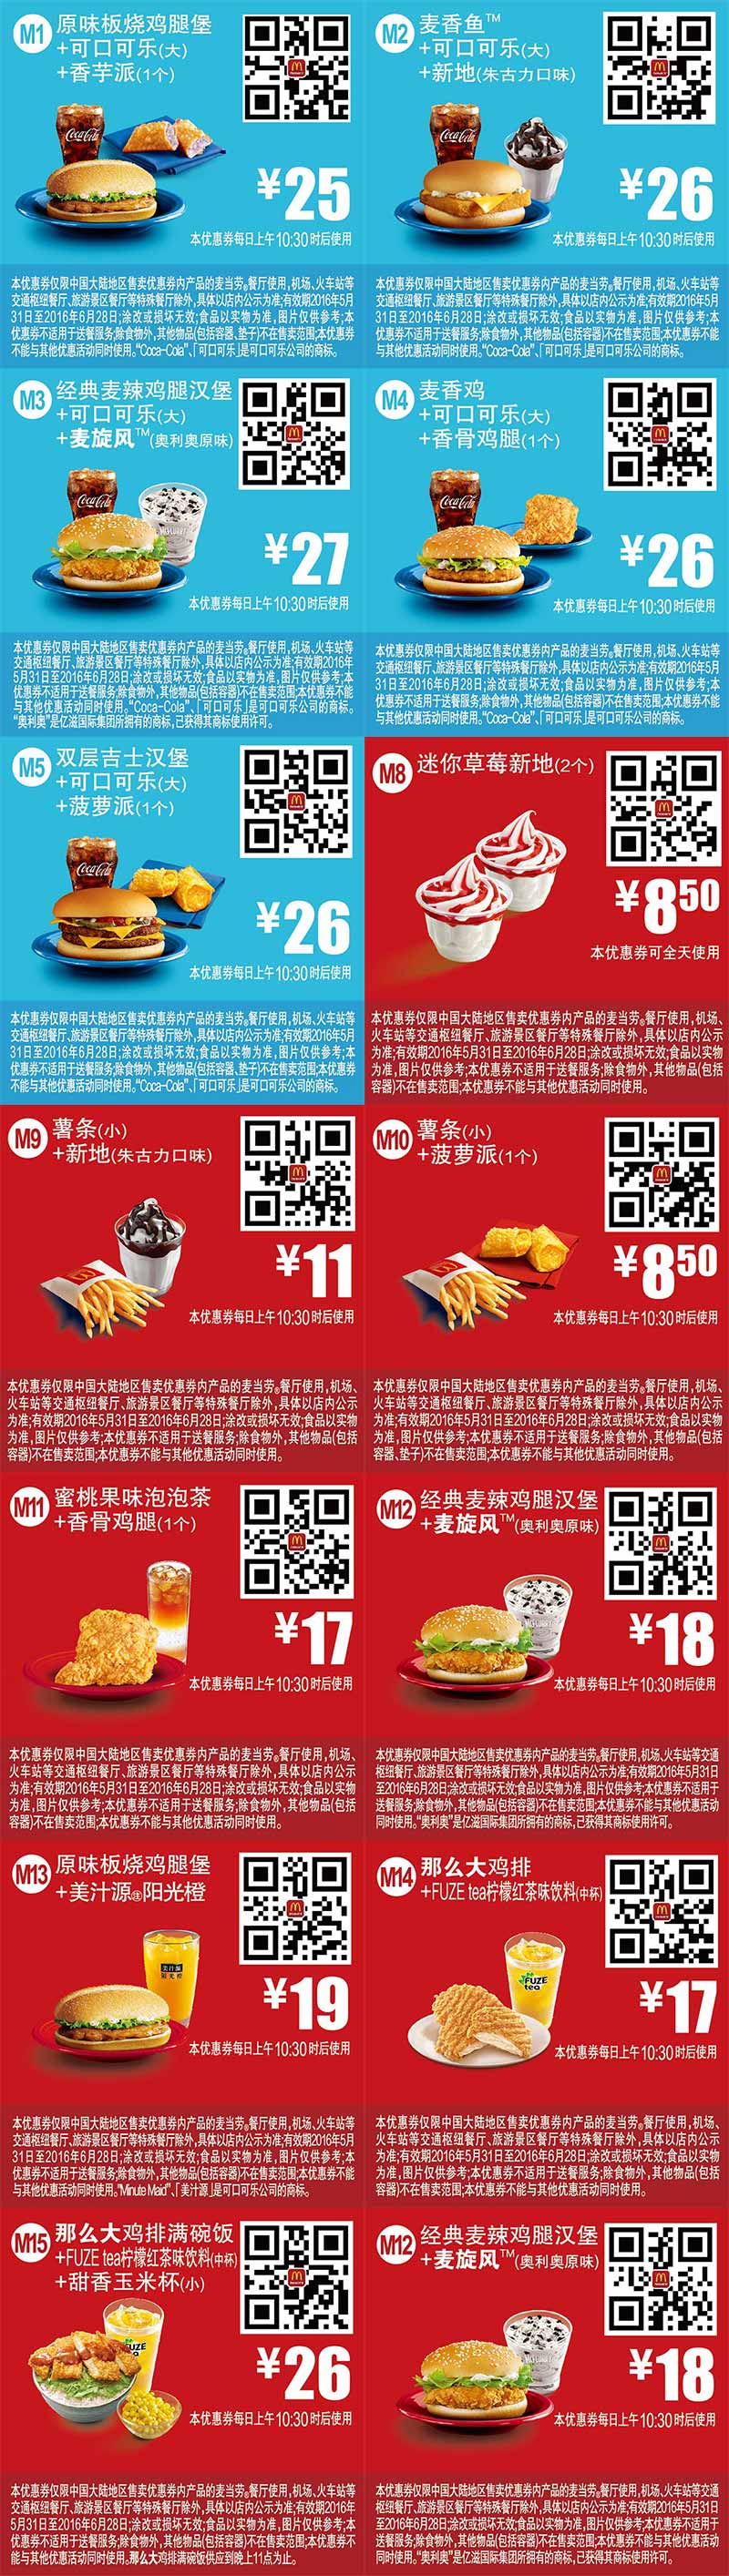 优惠券图片:麦当劳优惠券2016年6月手机版整张版本，手机出示即享优惠价 有效期2016年05月31日-2016年06月28日